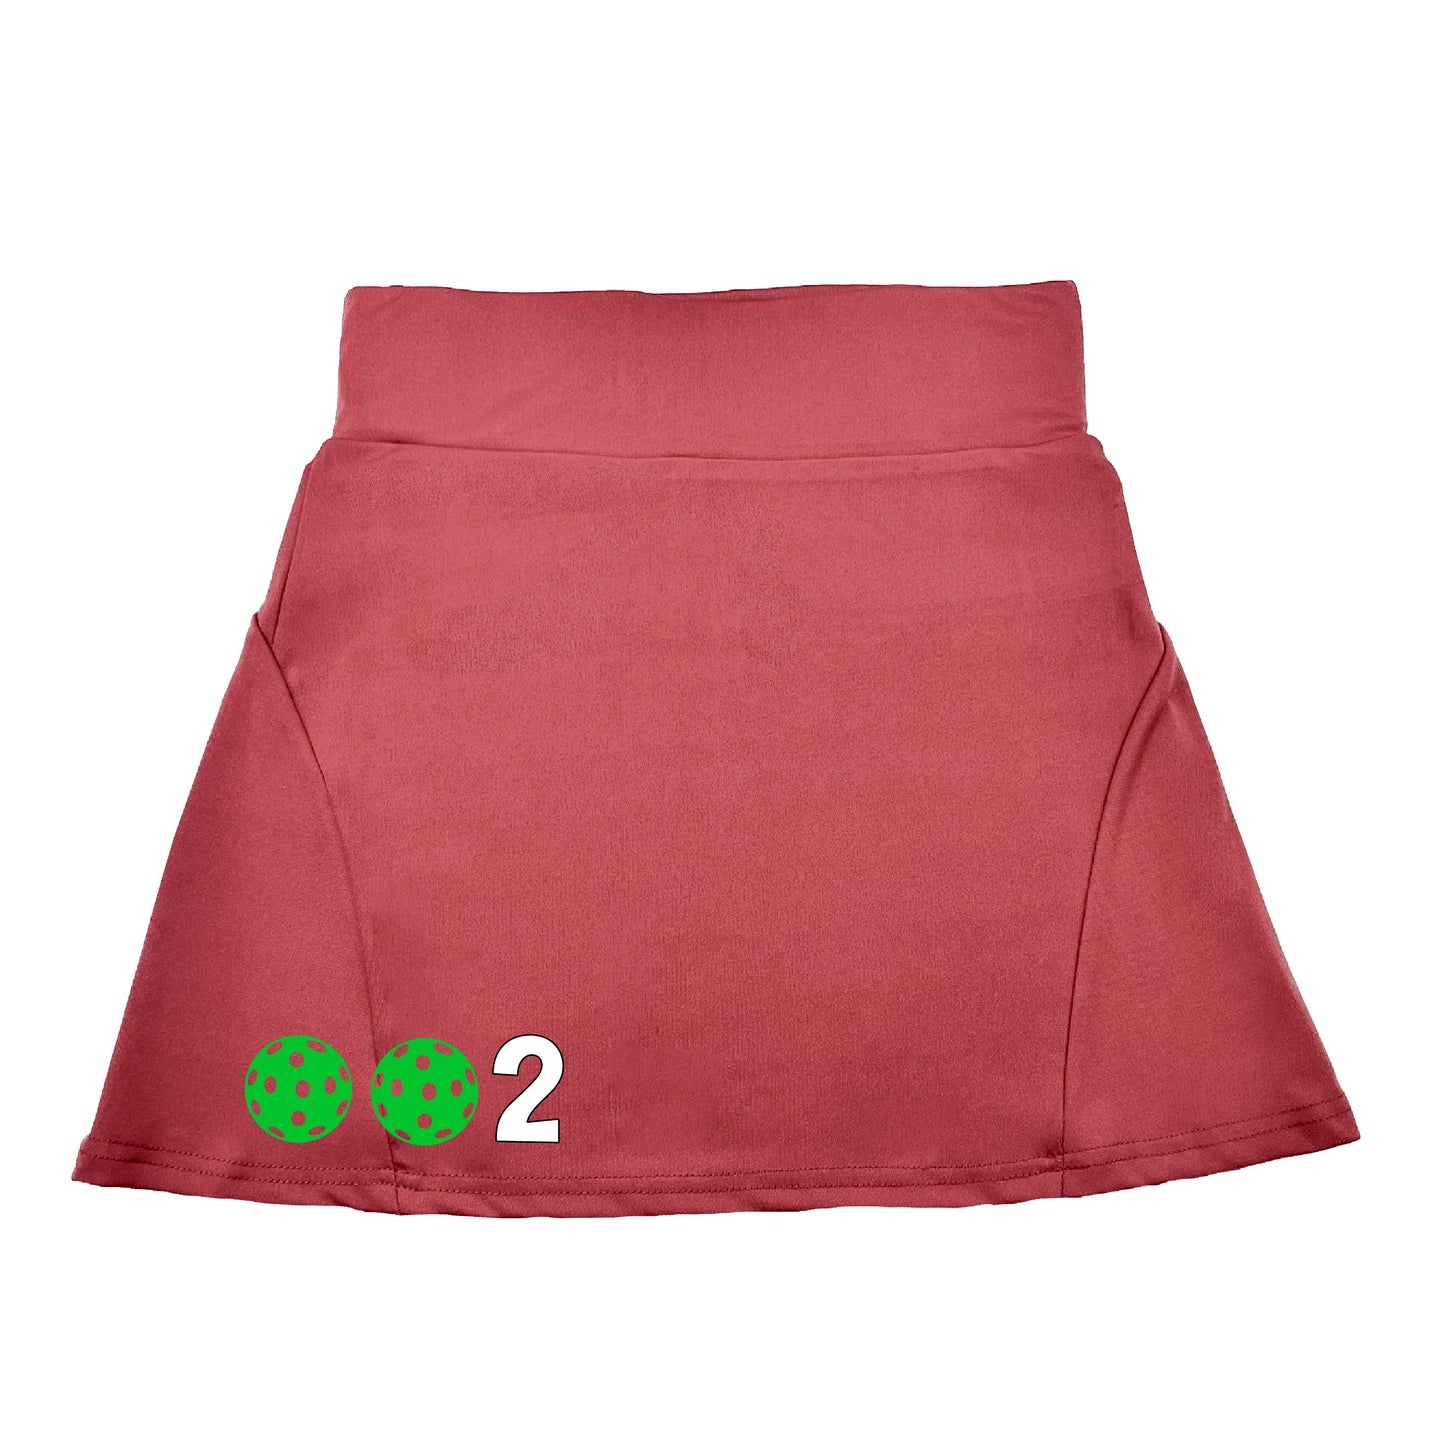 002 With Pickleballs (Colors Green, Orange, Red) | Women's Flirty Pickleball Skort